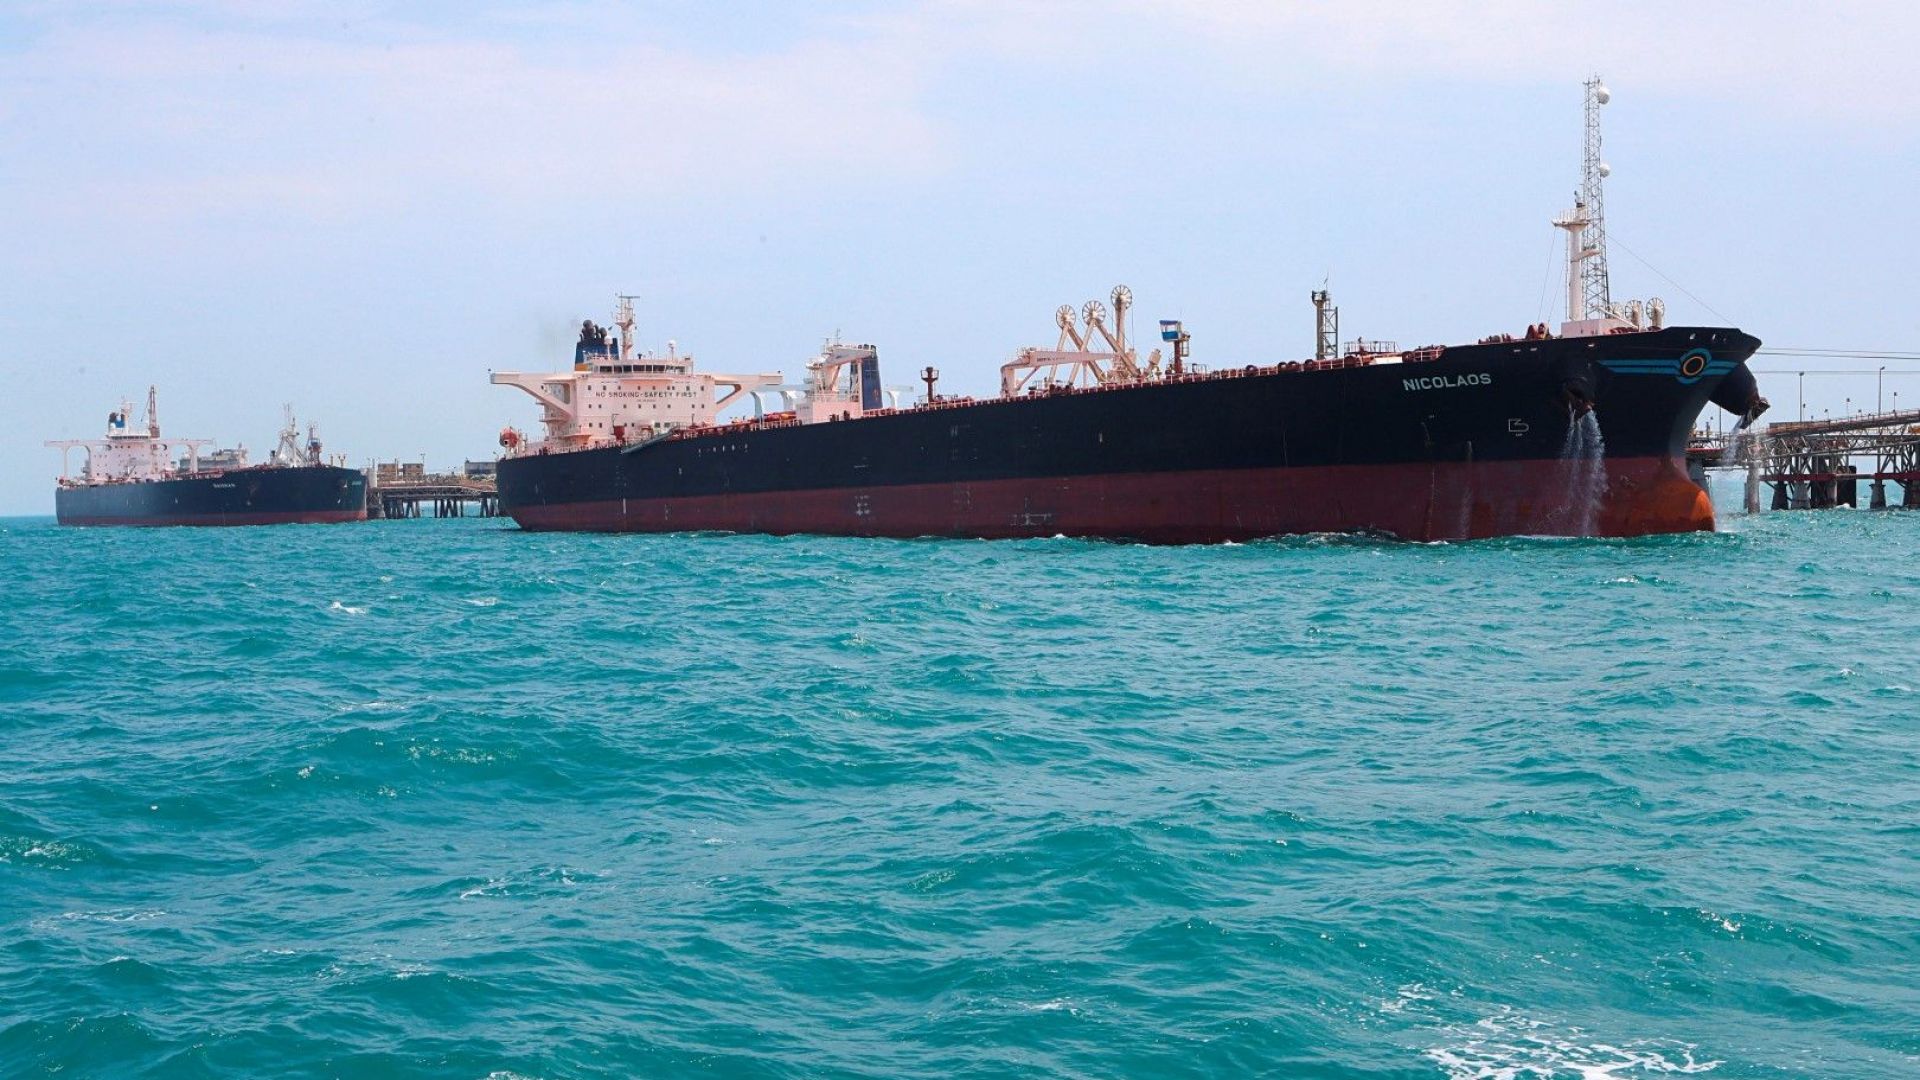 Иранската Революционна гвардия съобщи че е задържала чуждестранен танкер с